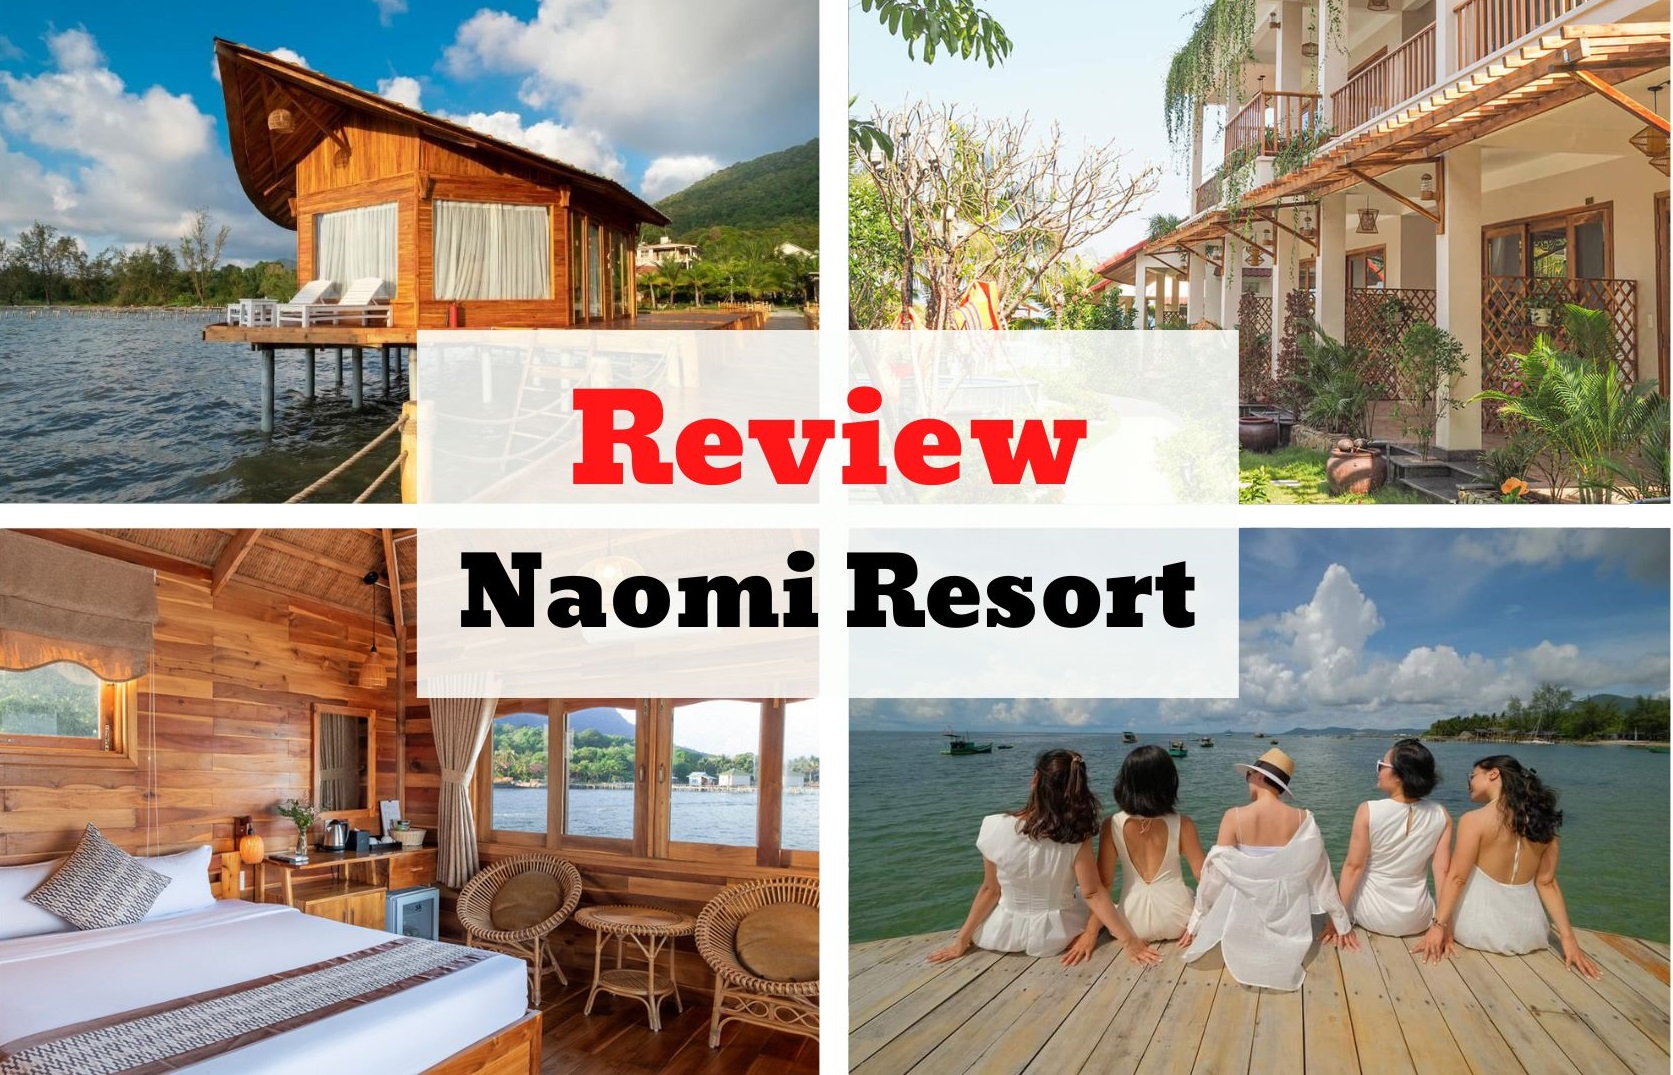 Review Naomi Resort - Thiên đường trên biển đẹp ngất ngây tại Phú Quốc